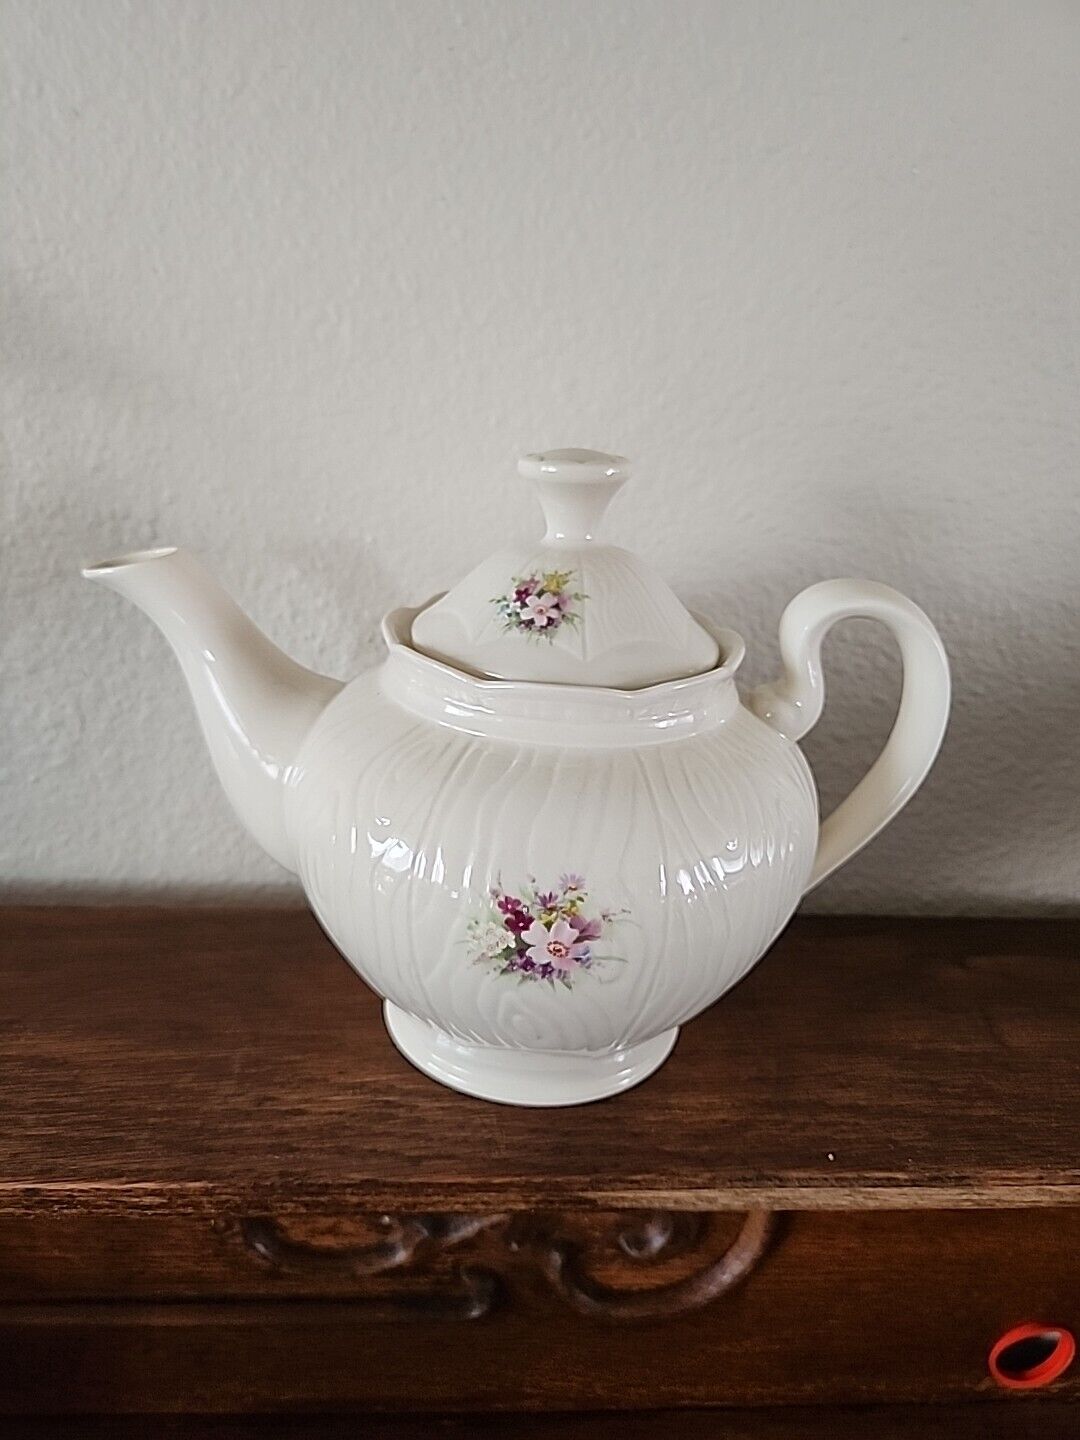 Vintage Donegal lrish Parian China Tea Pot 8020 Rose Pattern Ireland